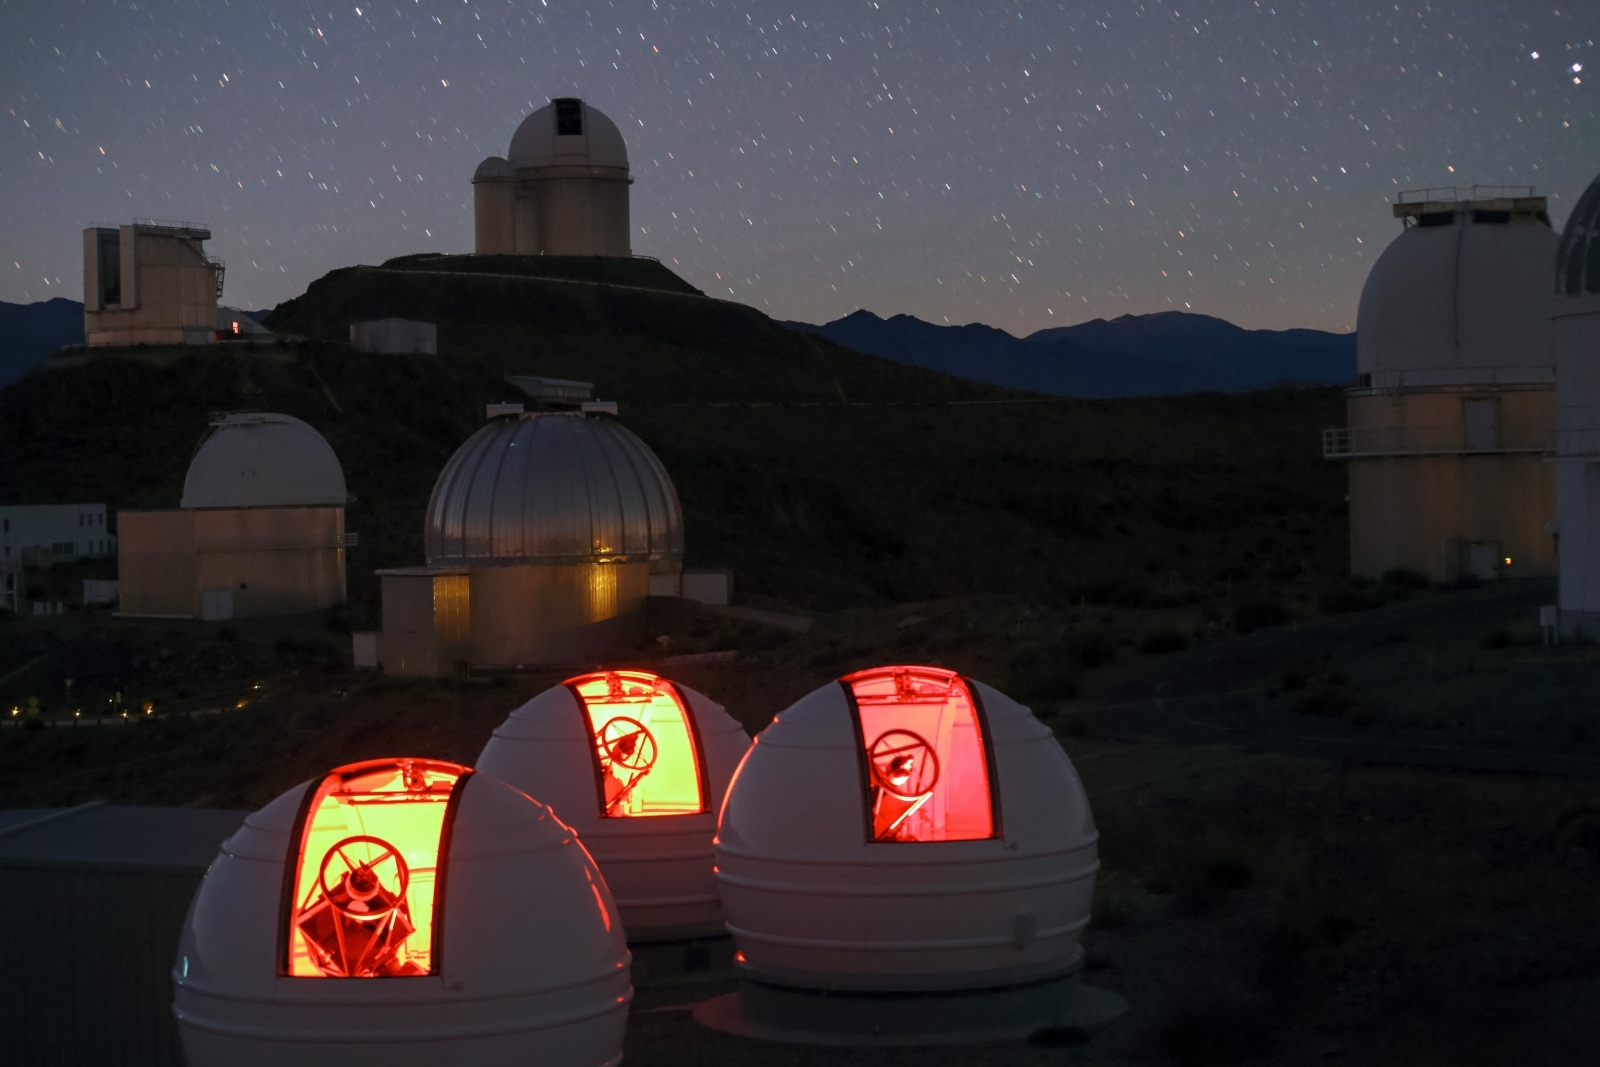 ExTra telescopes